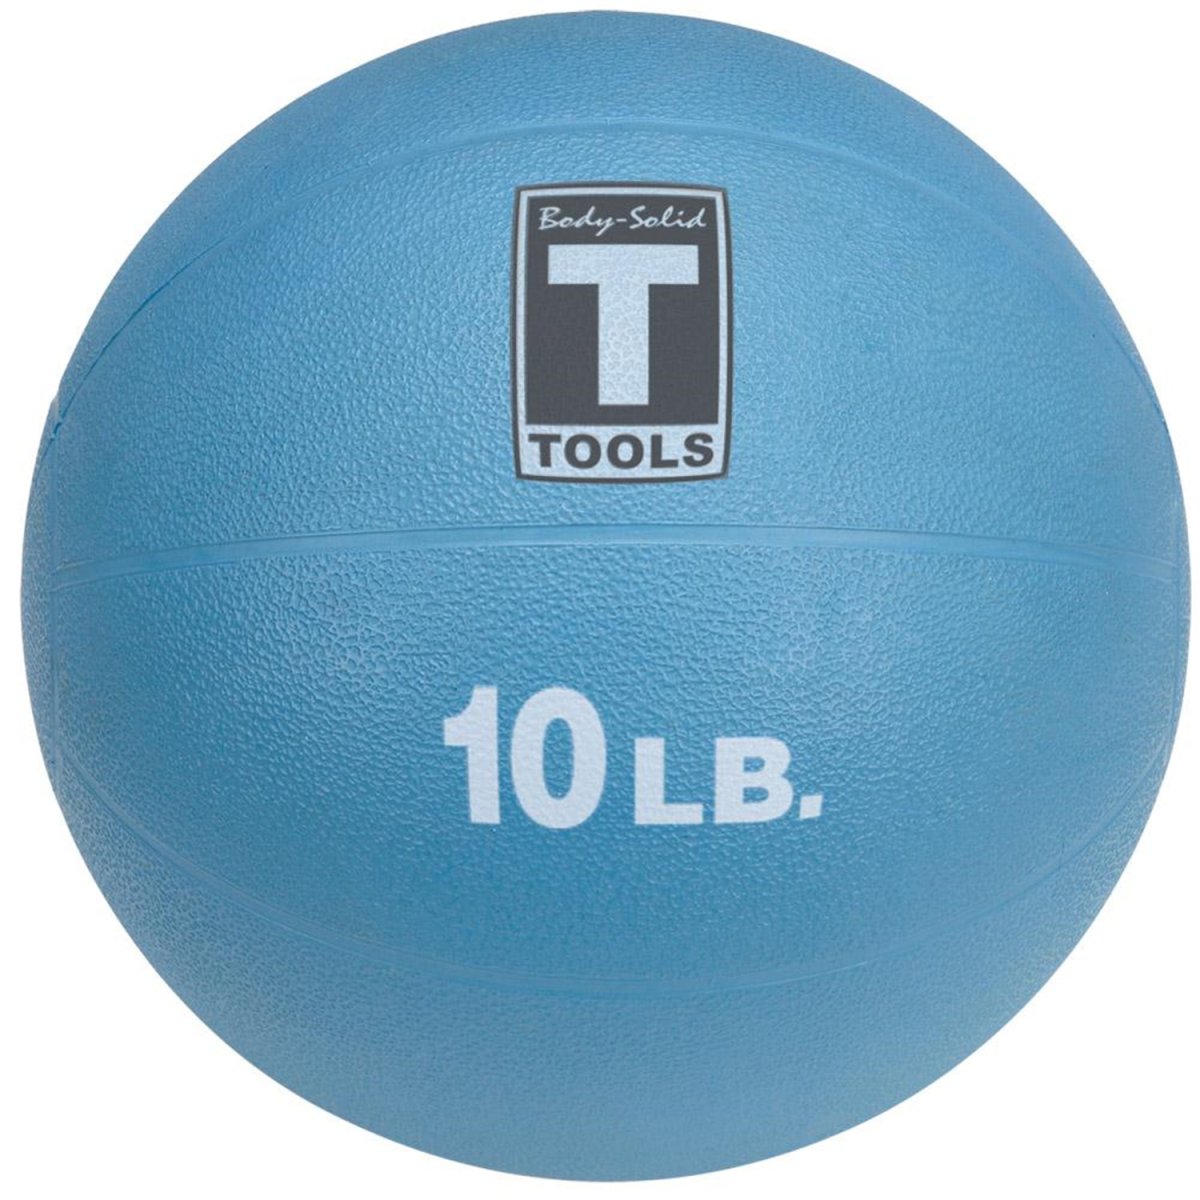 Тренировочный мяч 4 кг